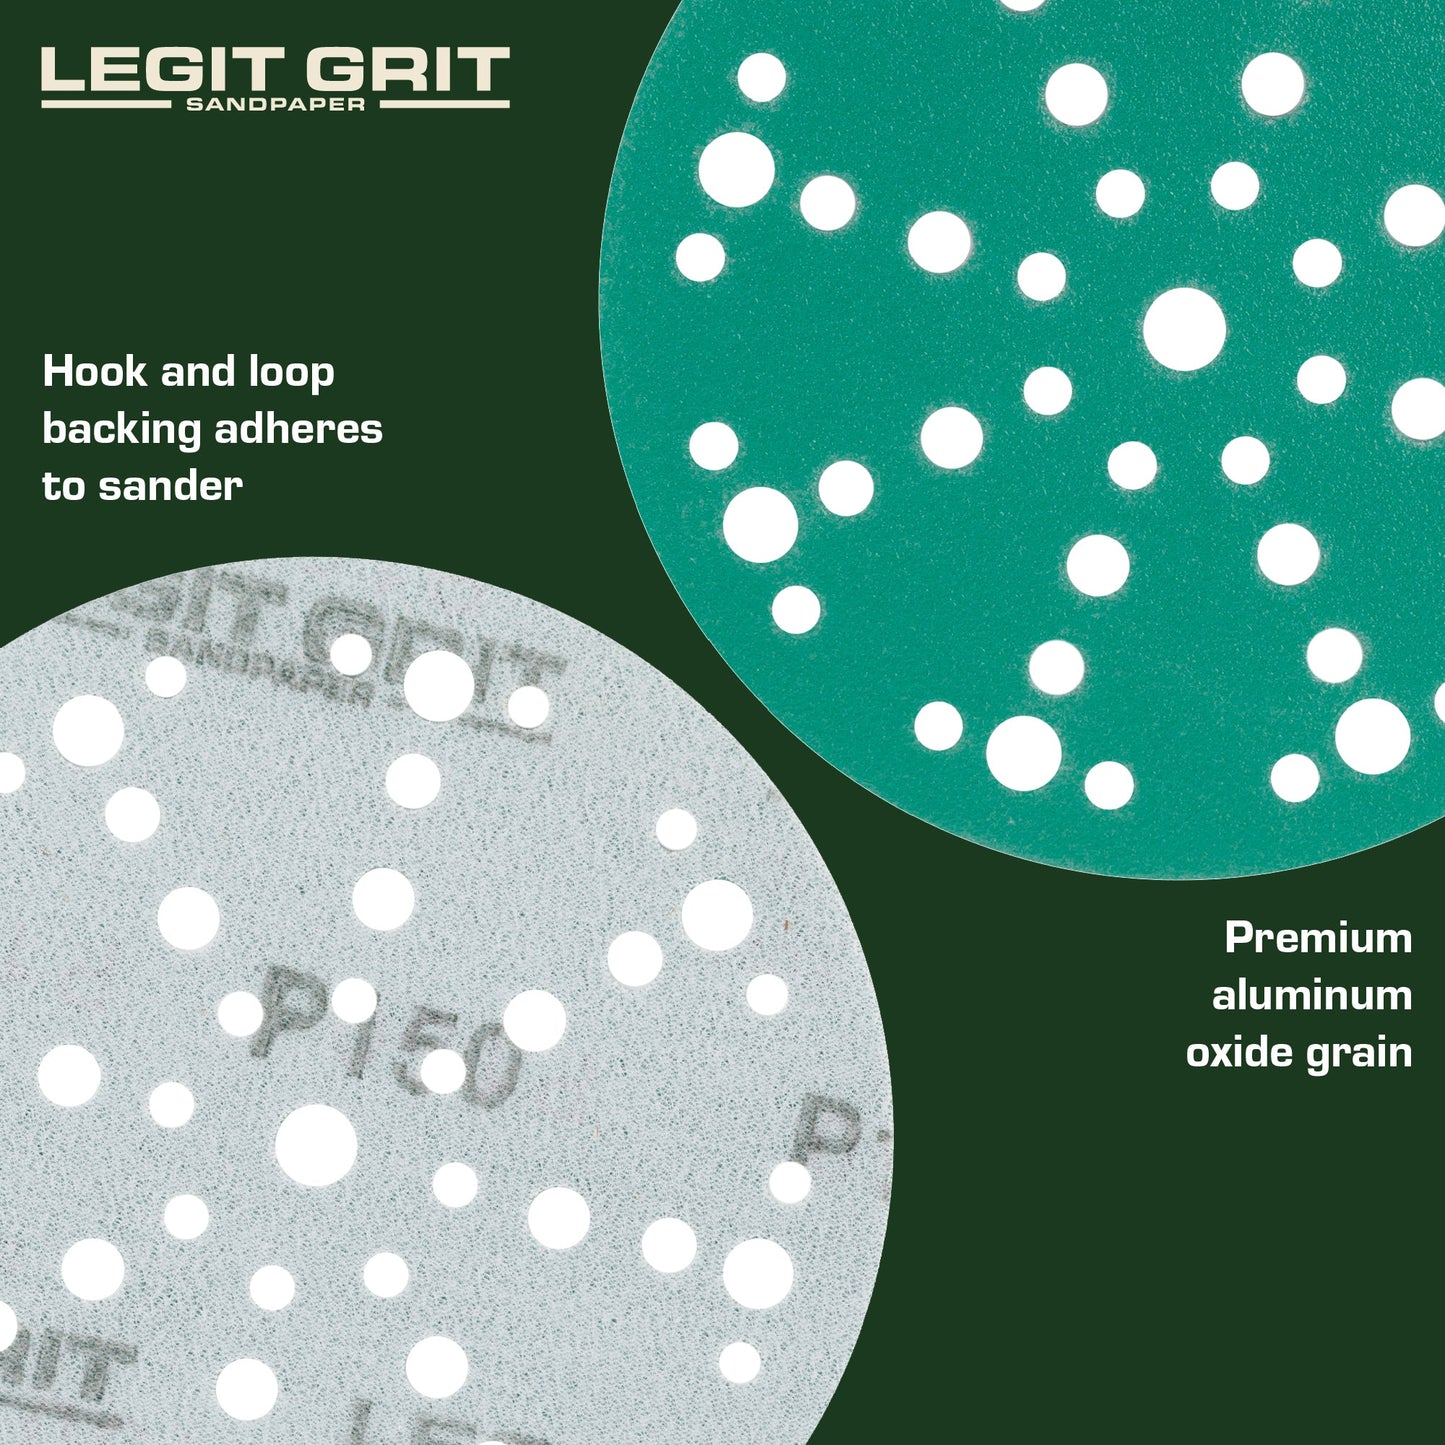 6-Inch 49-Hole Sanding Discs, Single Grit, 50/100/150-Packs - Legit Grit